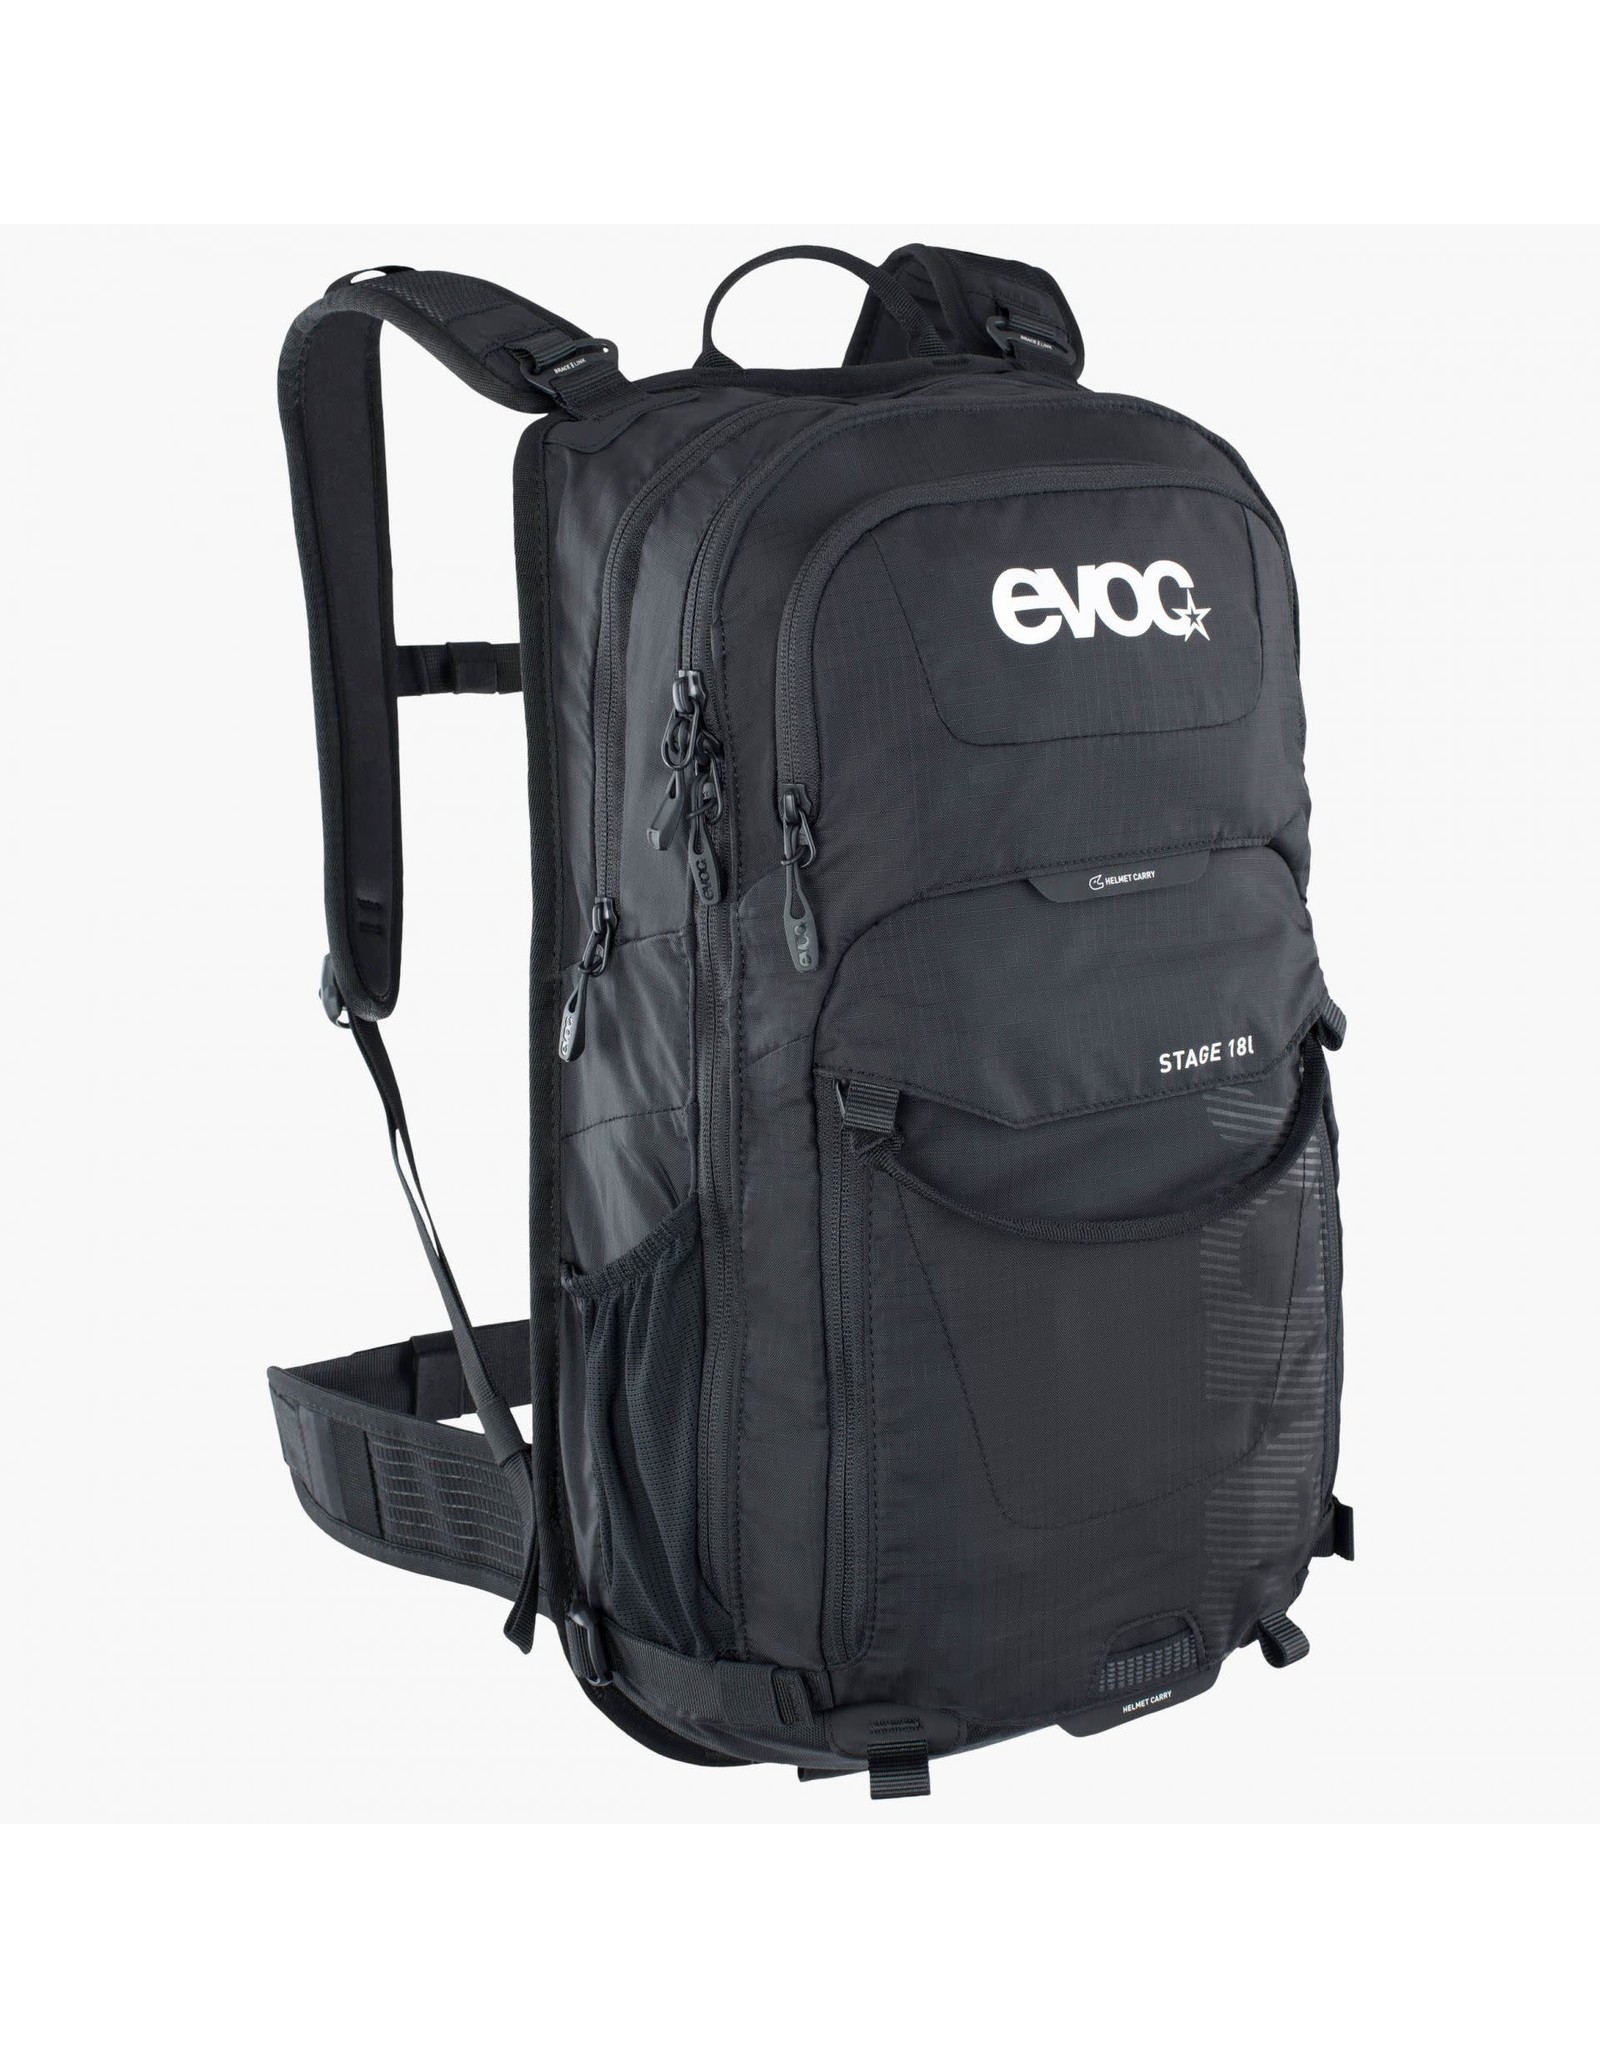 EVOC EVOC - Stage 18 Hydration Bag 18L Black (Bladder Not Included)